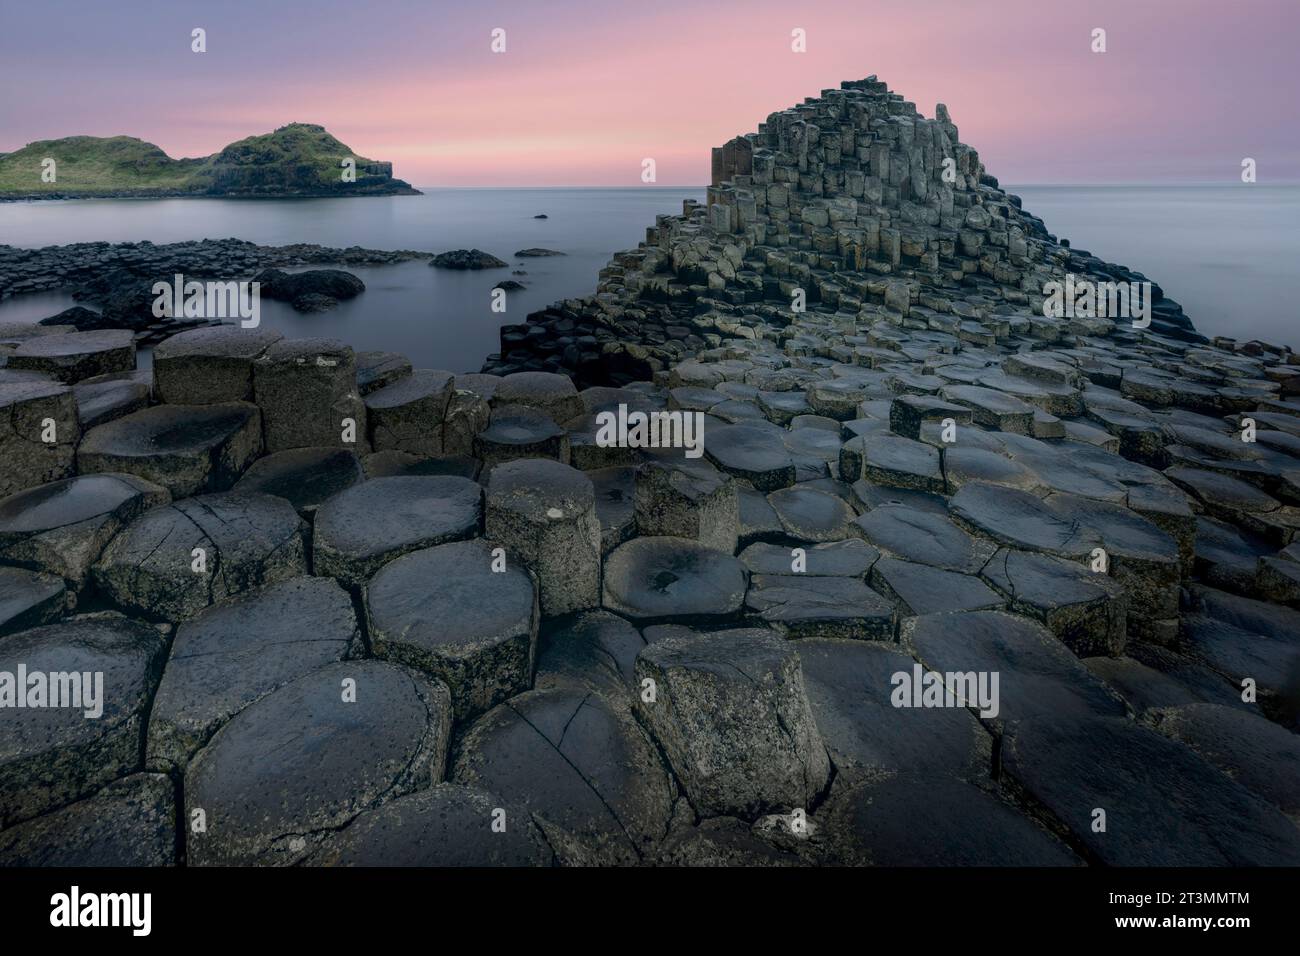 La chaussée des géants est un site classé au patrimoine mondial de l'UNESCO situé sur la côte de l'Irlande du Nord. C'est une merveille géologique composée de plus de 40 000 int Banque D'Images